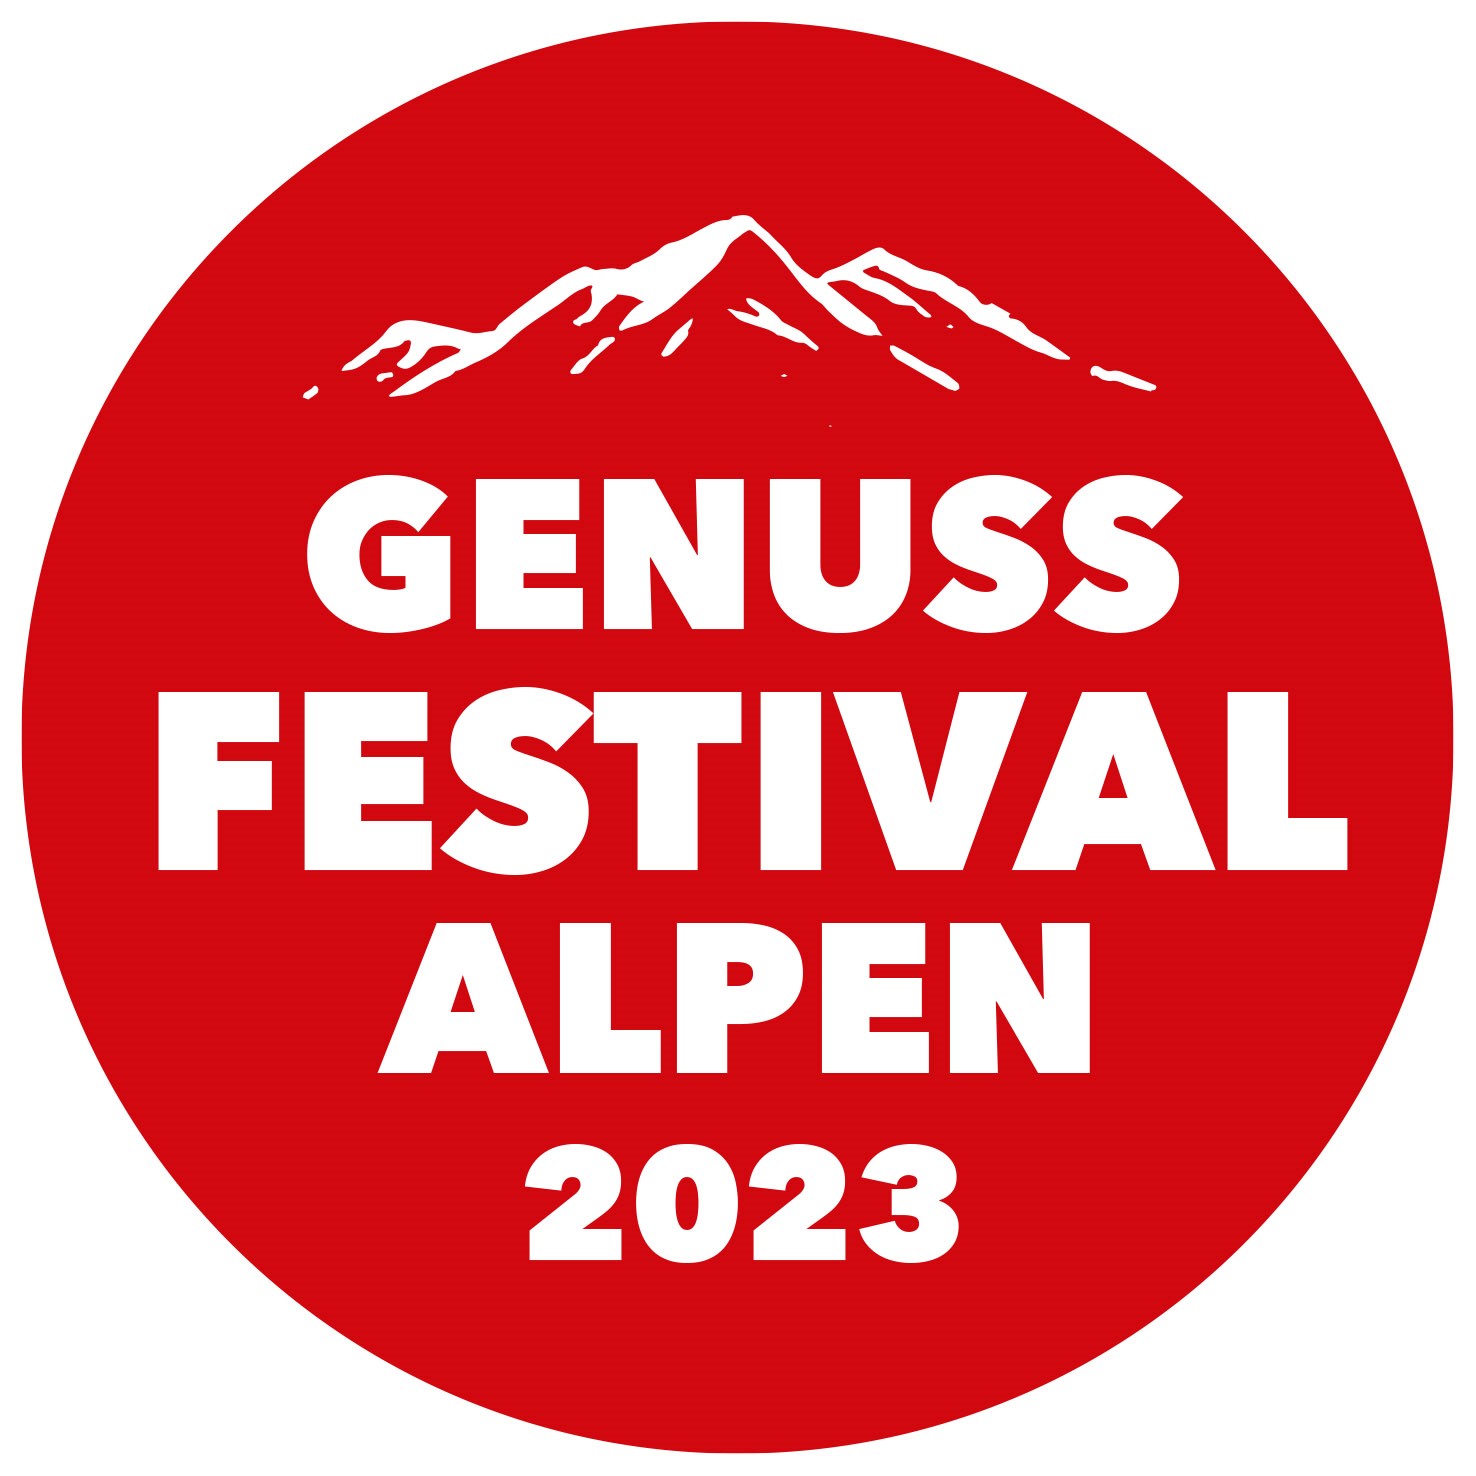 Genuss-Festival-Alpen-2023_logo_rot_Kreis